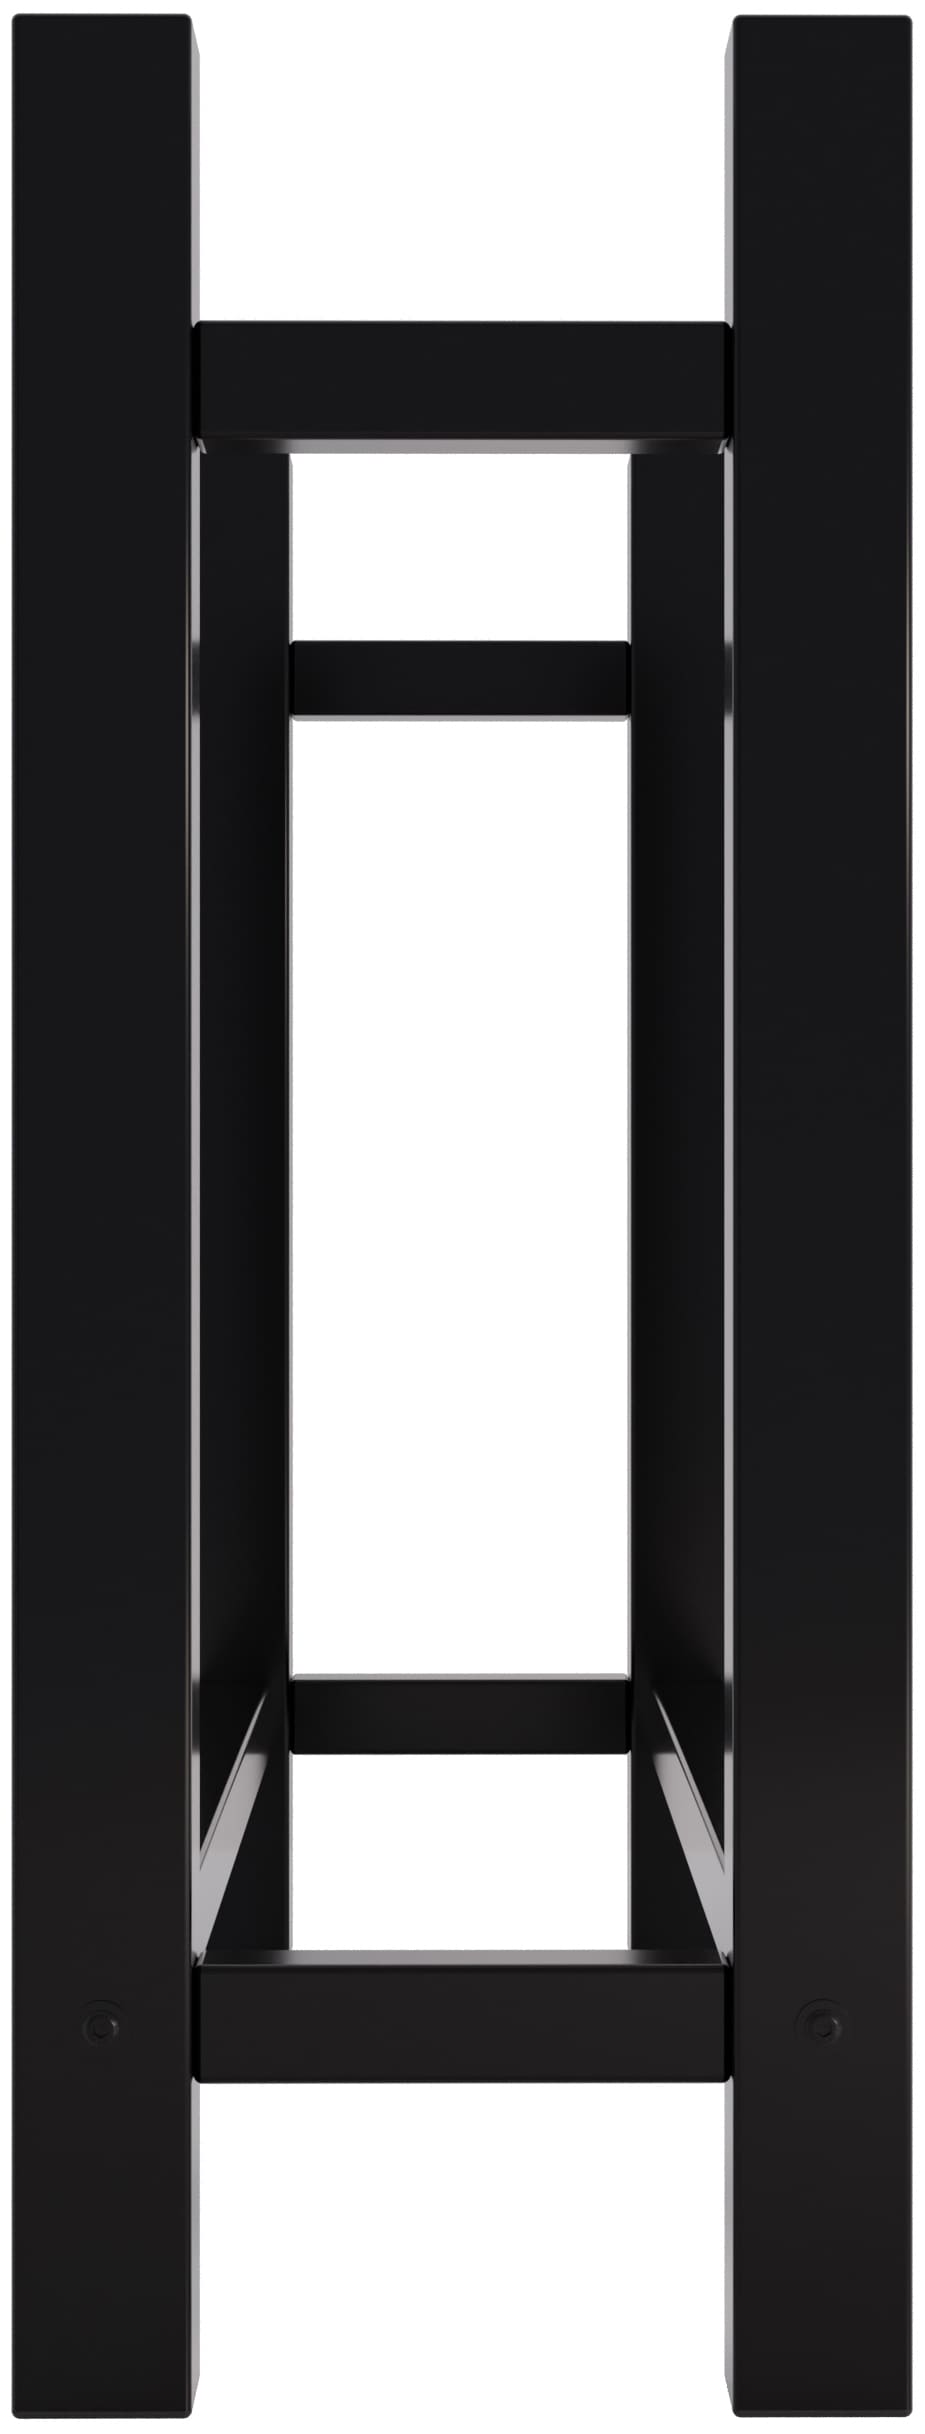 Kaminholzständer Medya schwarz 30x100x80 cm eckig